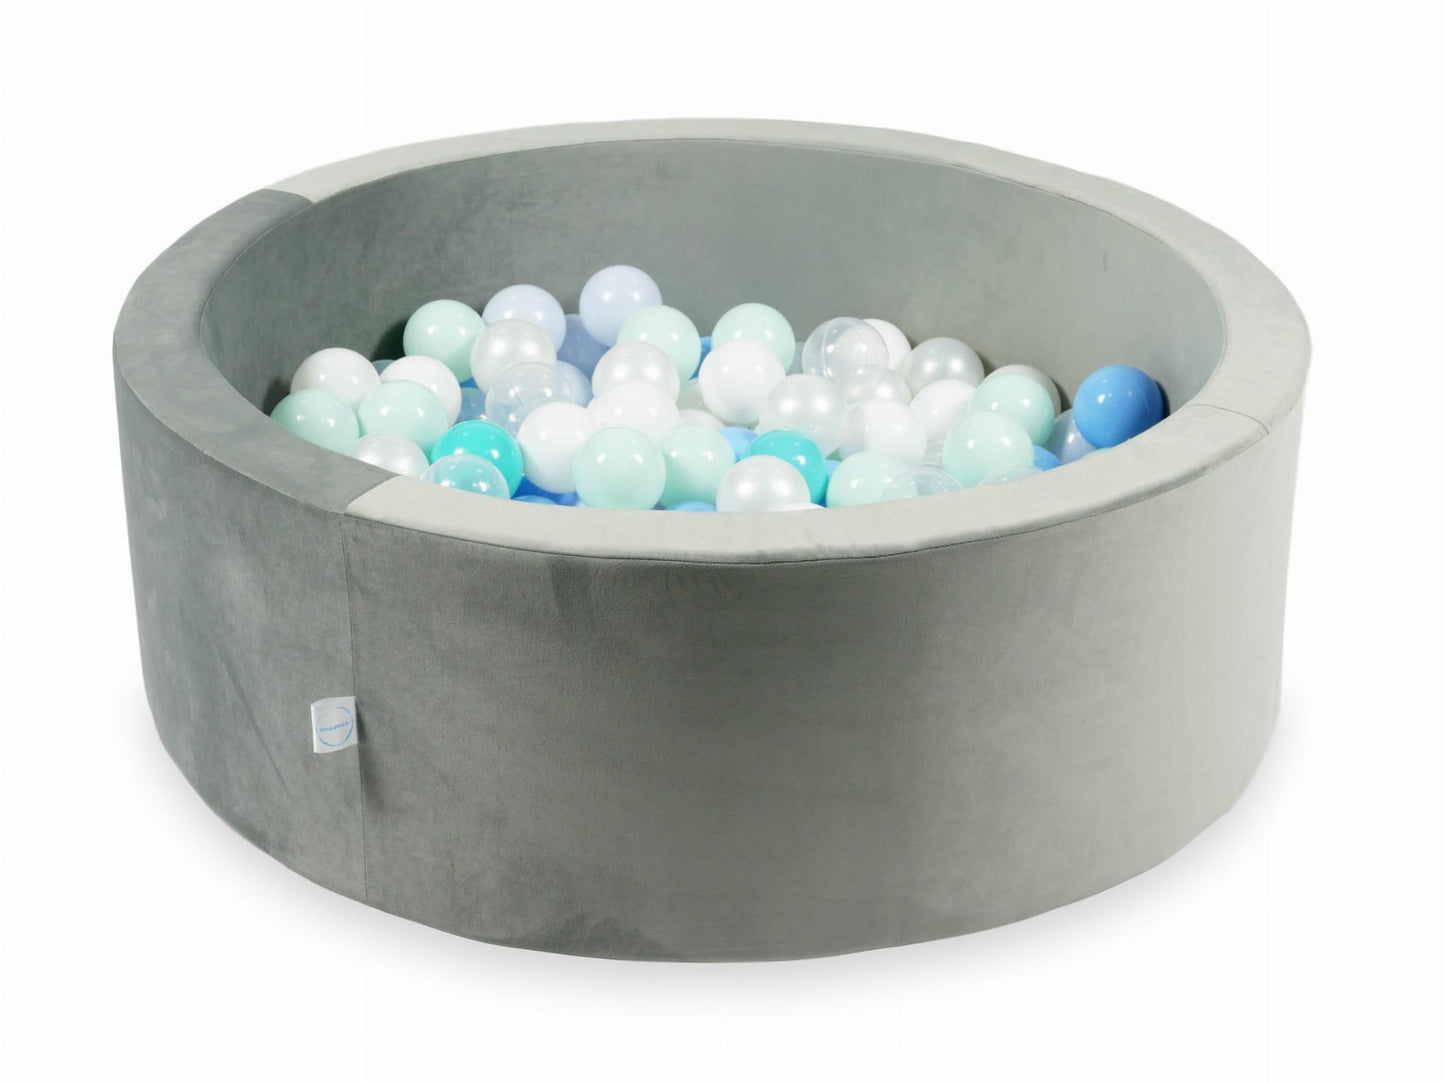 Piscine à Balles 90x30 Velvet gris avec balles 200 pcs (menthe claire, turquoise, bleu clair, bleu clair perlé, iridescent, perle, blanc, transparent)